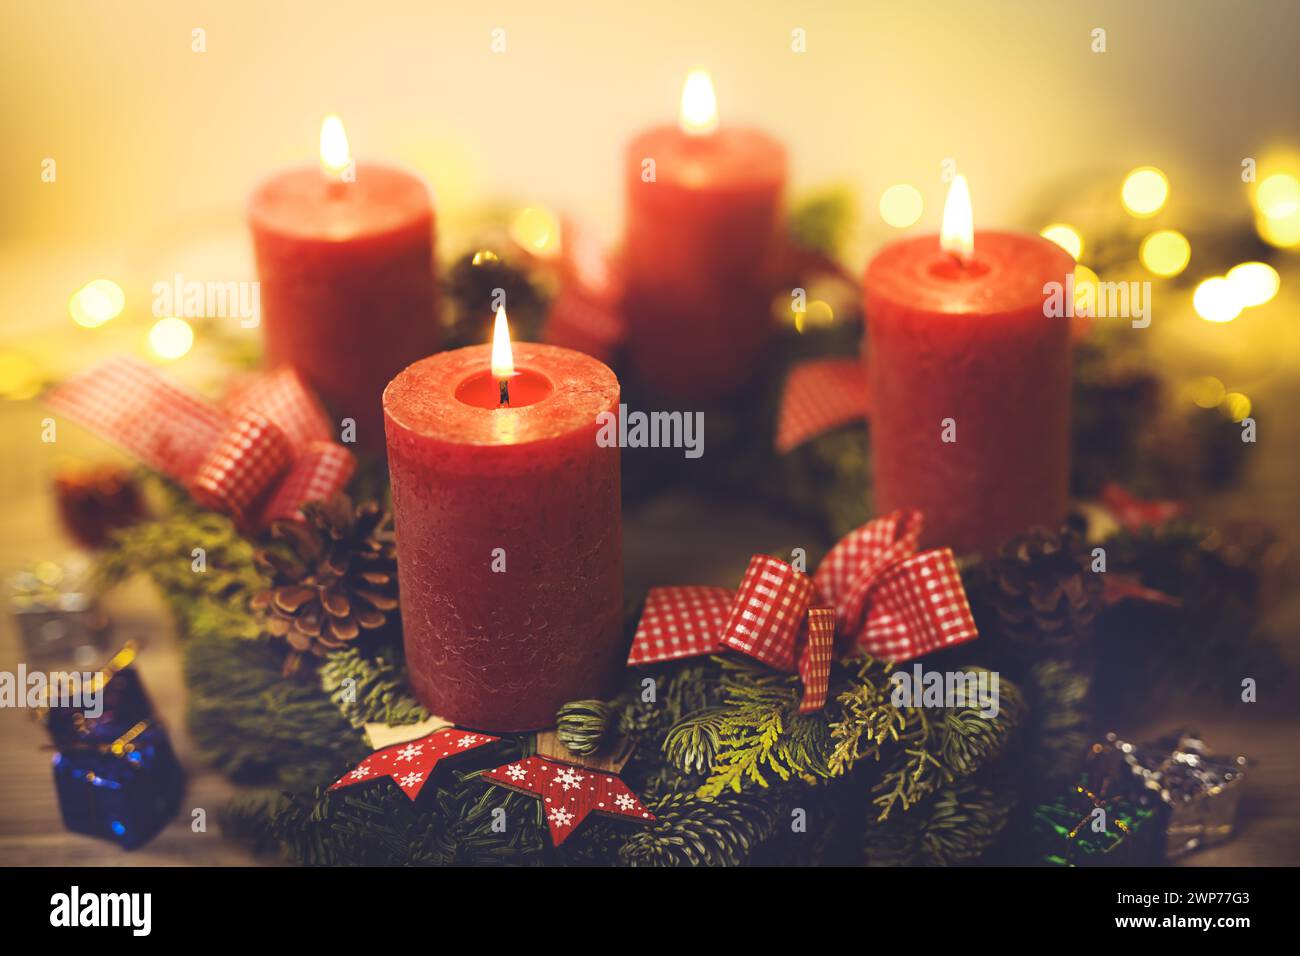 Adventskranz mit vier brennenden Kerzen Stock Photo